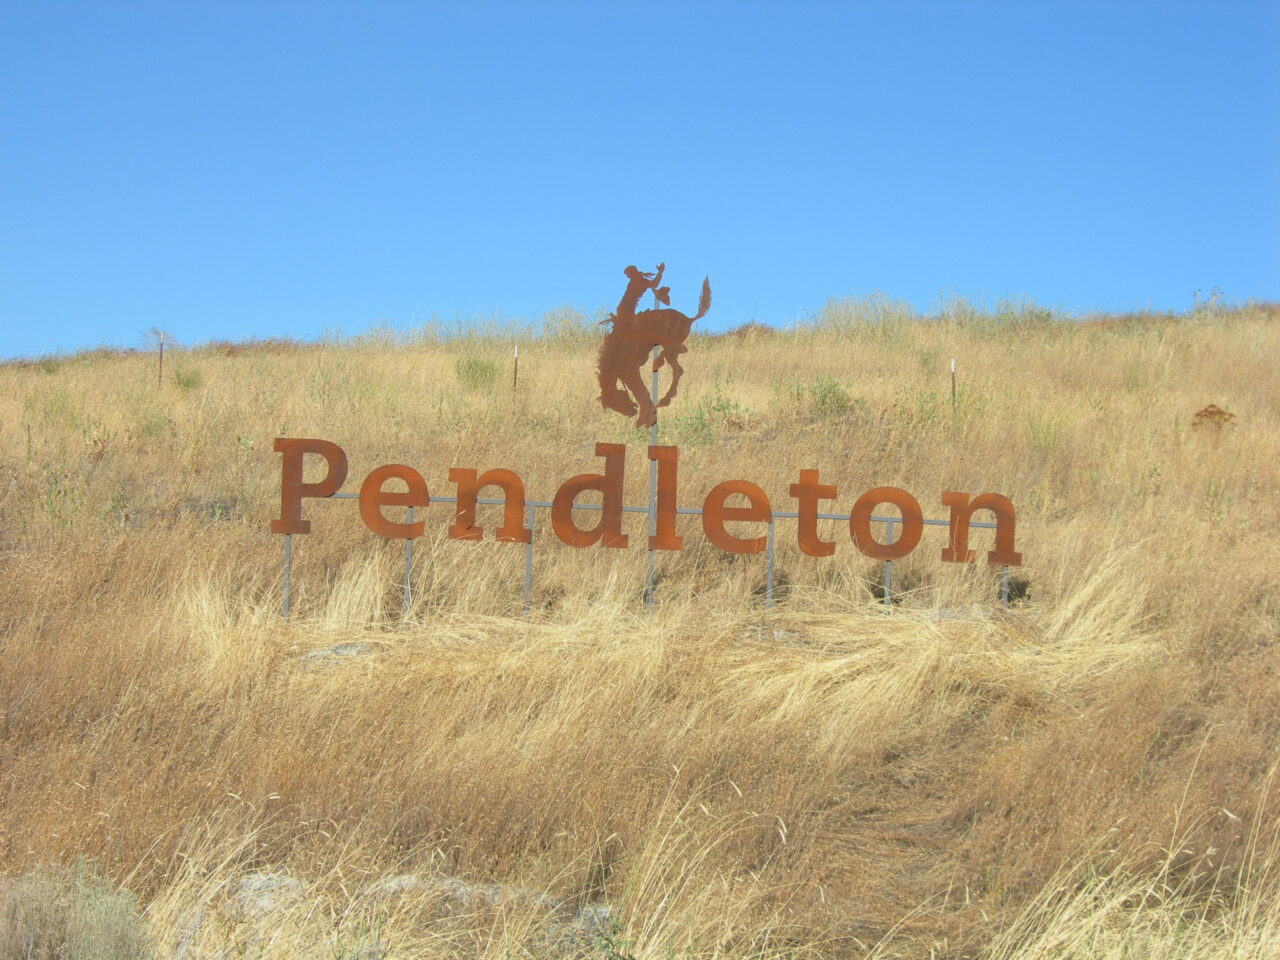 Pendleton Oregon Sign